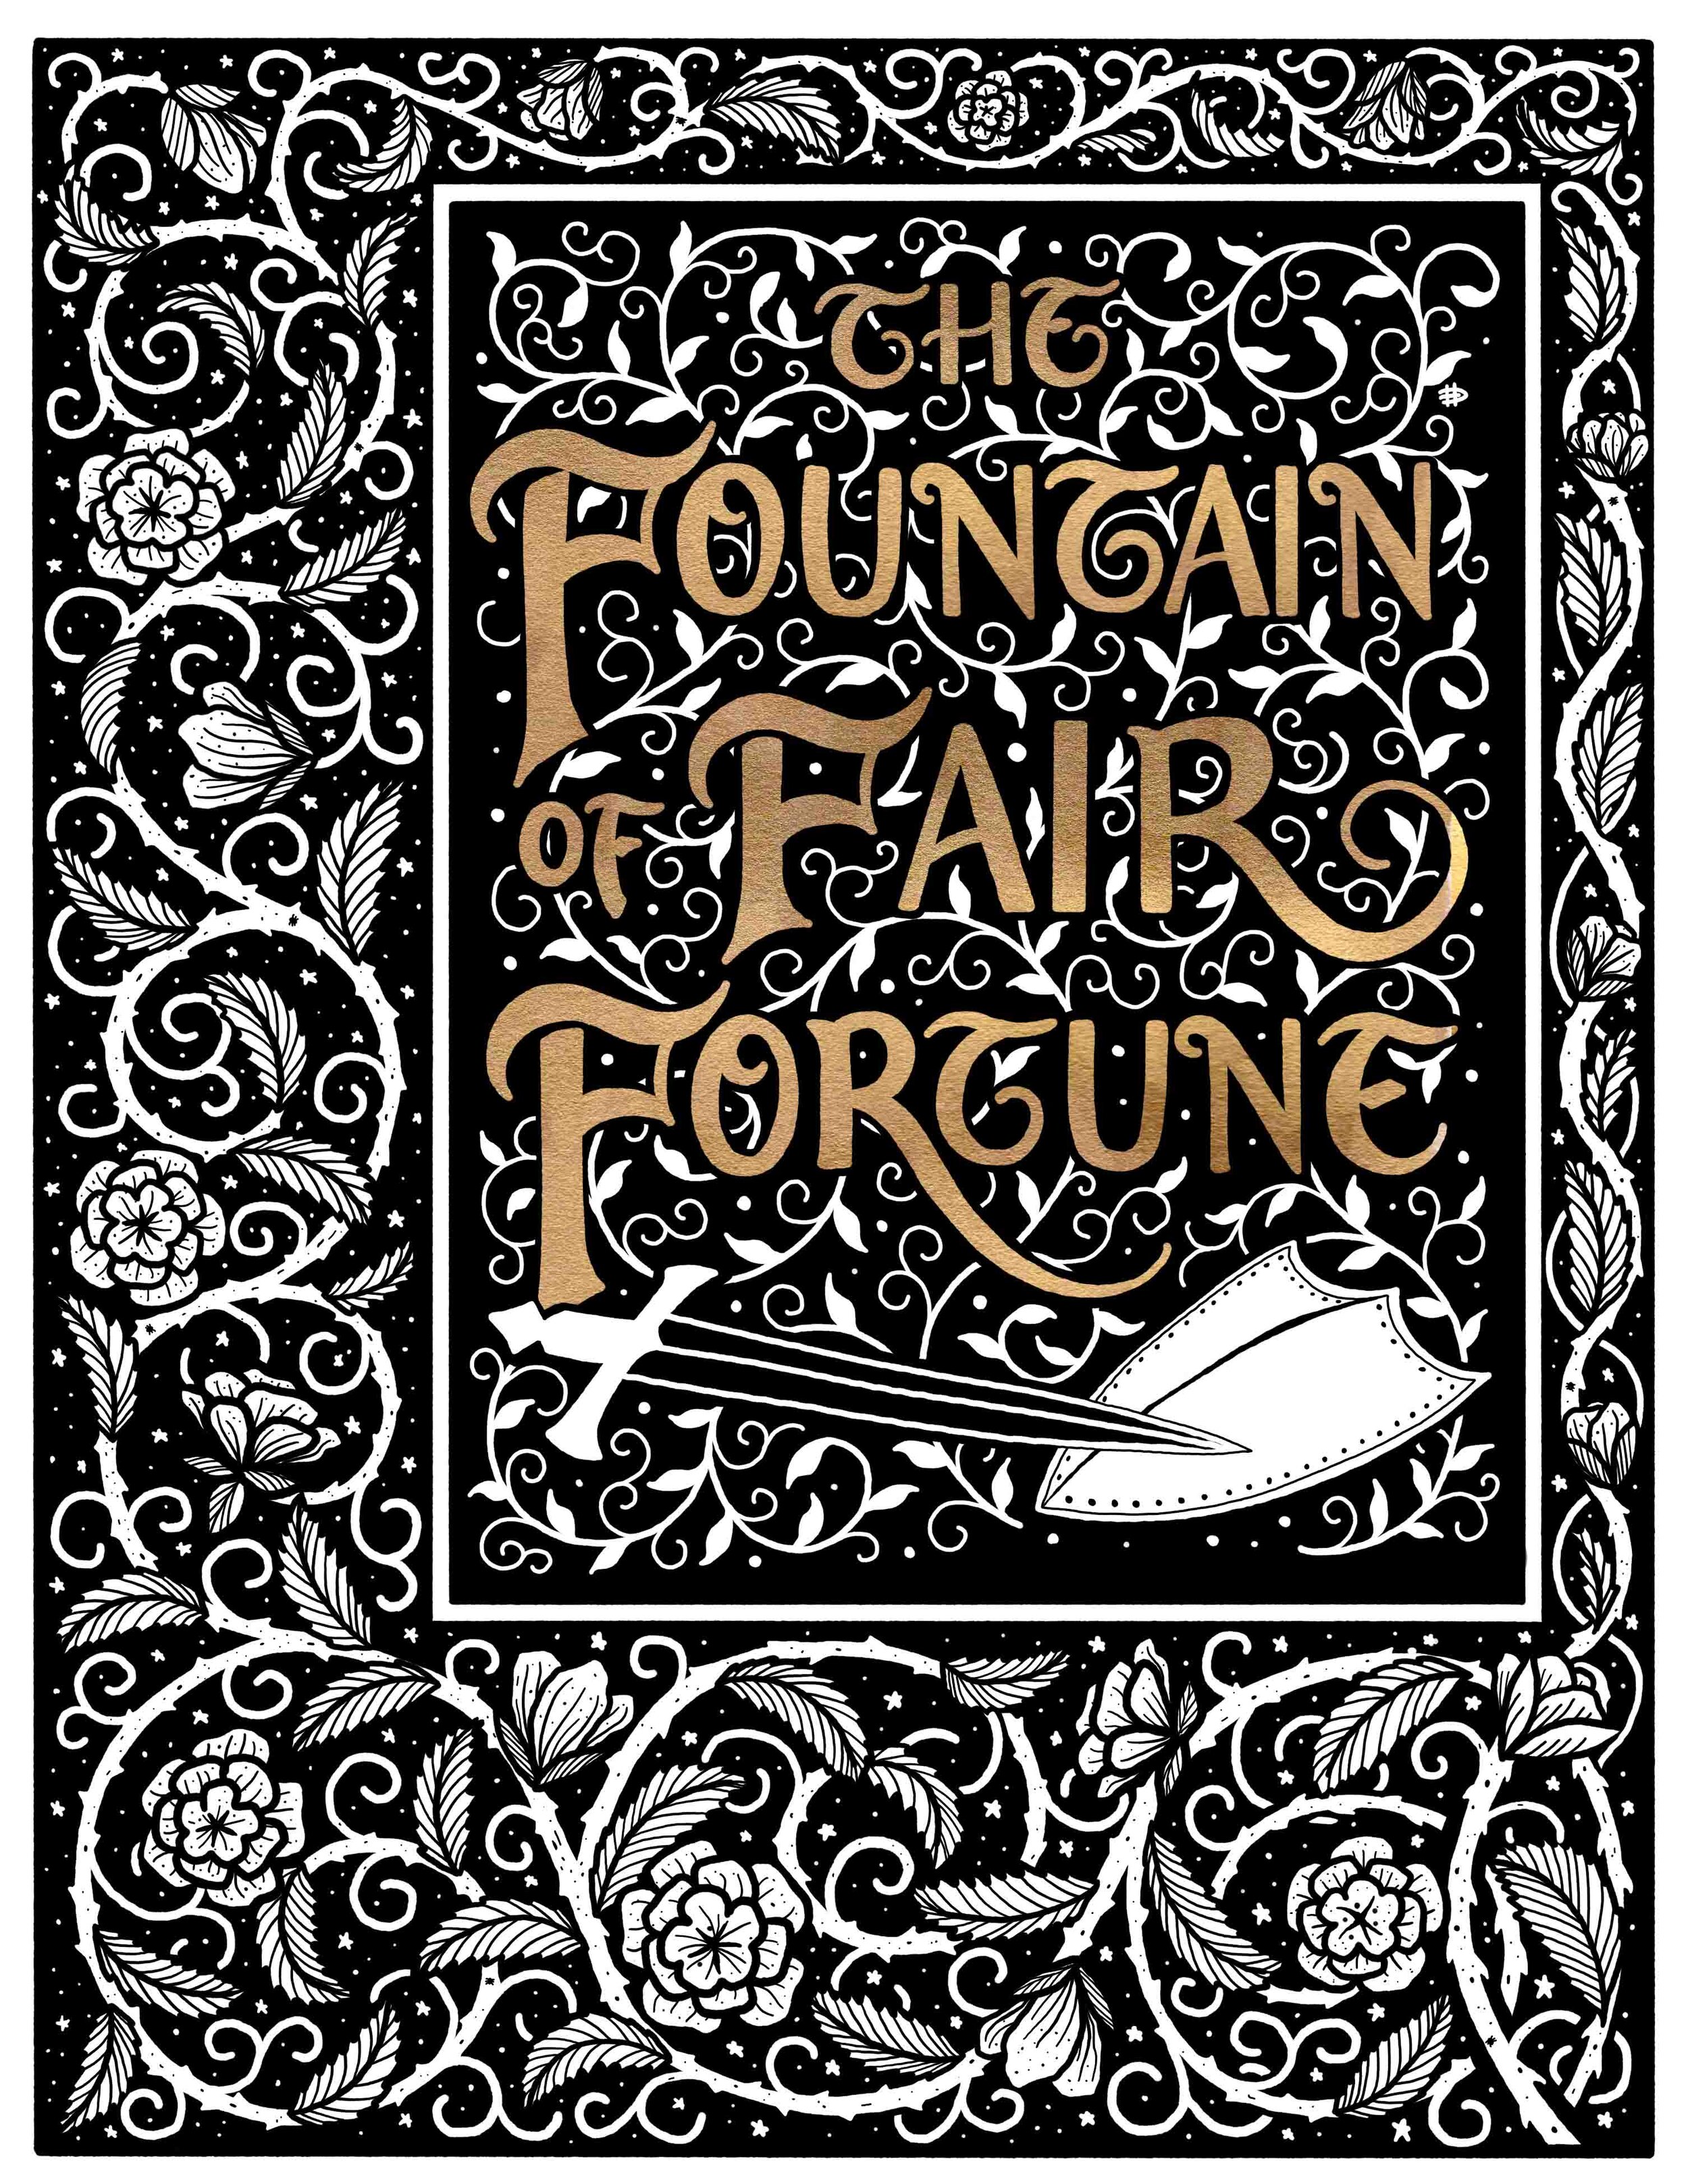 2._The_Fountain_Of_Fair_Fortune.jpg